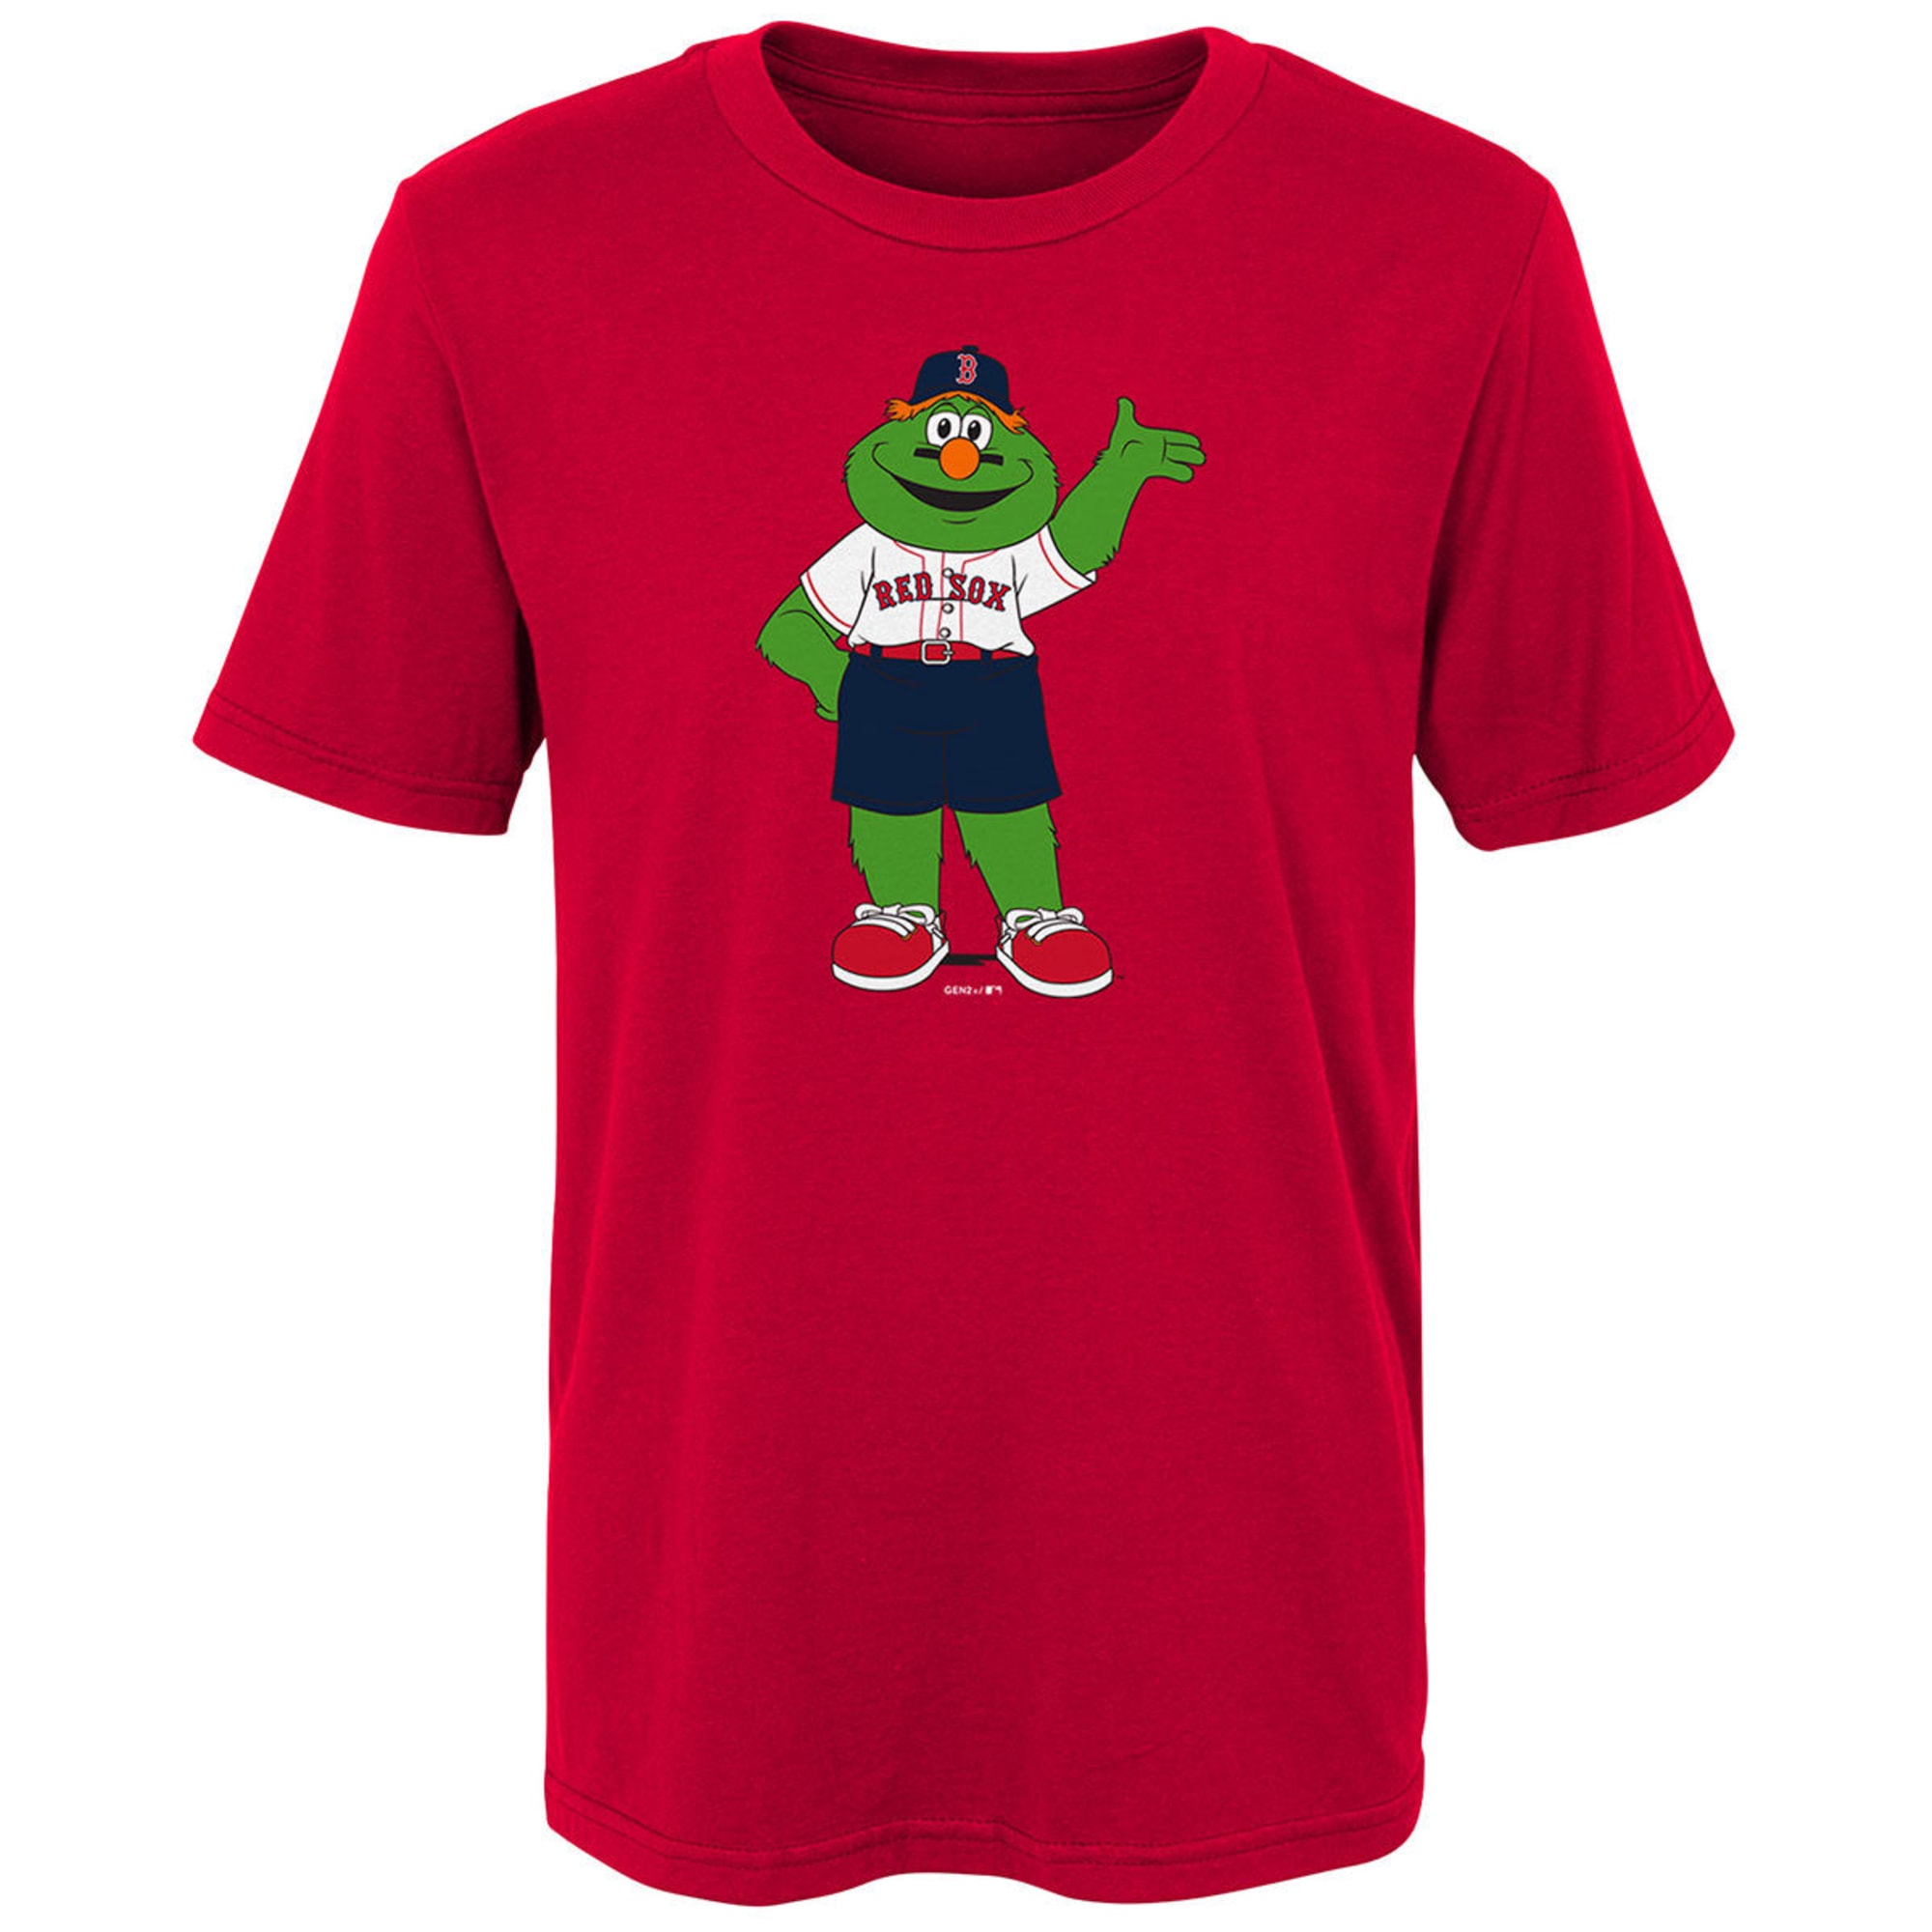 BOSTON RED SOX Big Kids' Mascot Wally Short-Sleeve Tee - Bob's Stores